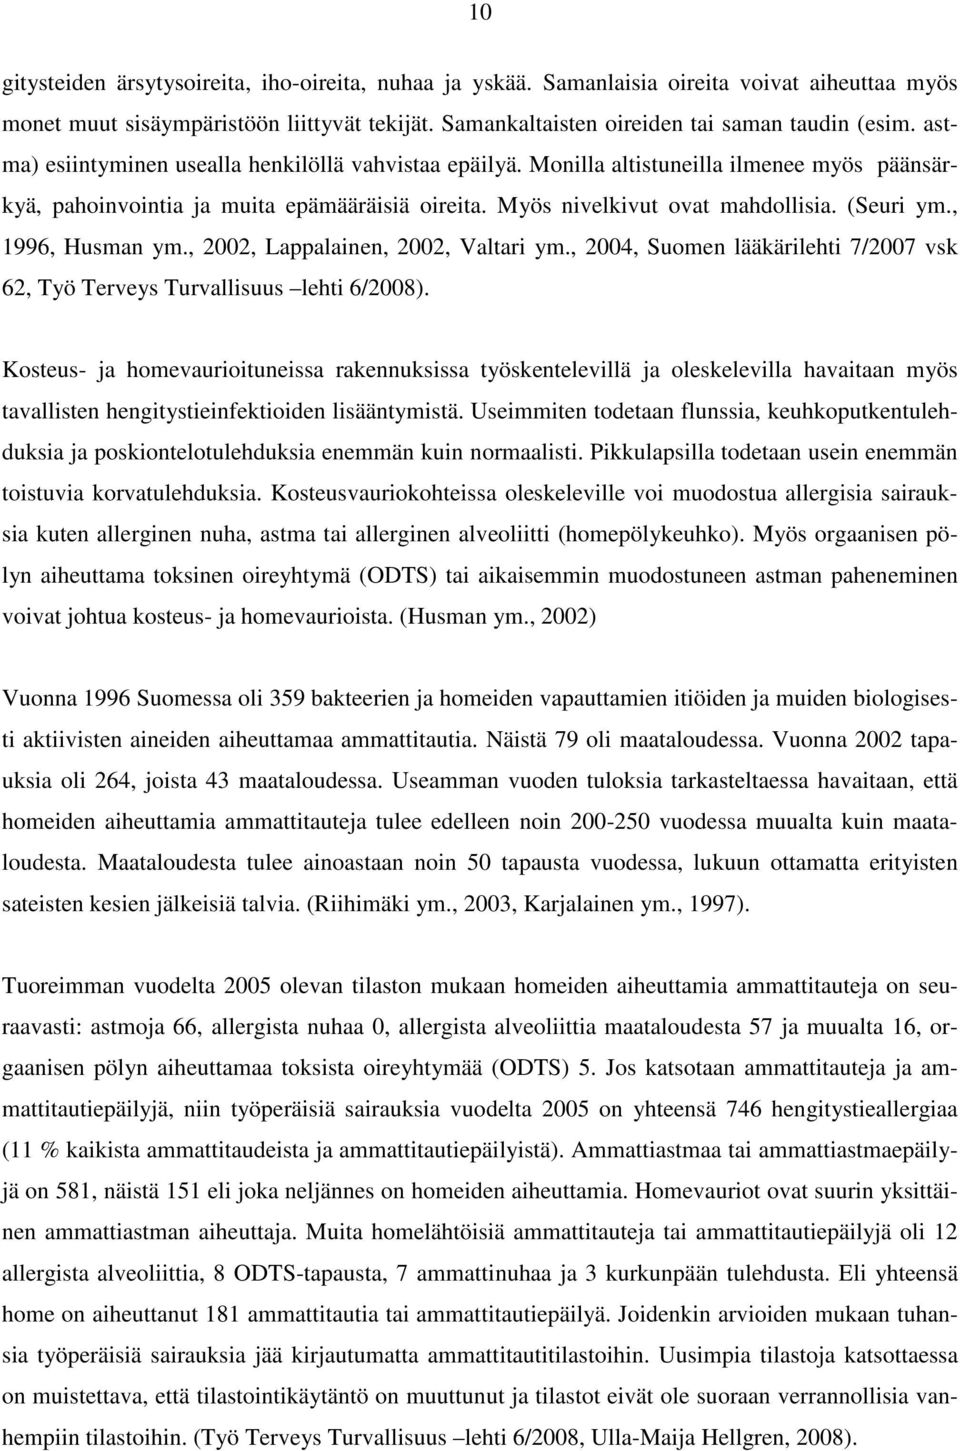 , 1996, Husman ym., 2002, Lappalainen, 2002, Valtari ym., 2004, Suomen lääkärilehti 7/2007 vsk 62, Työ Terveys Turvallisuus lehti 6/2008).